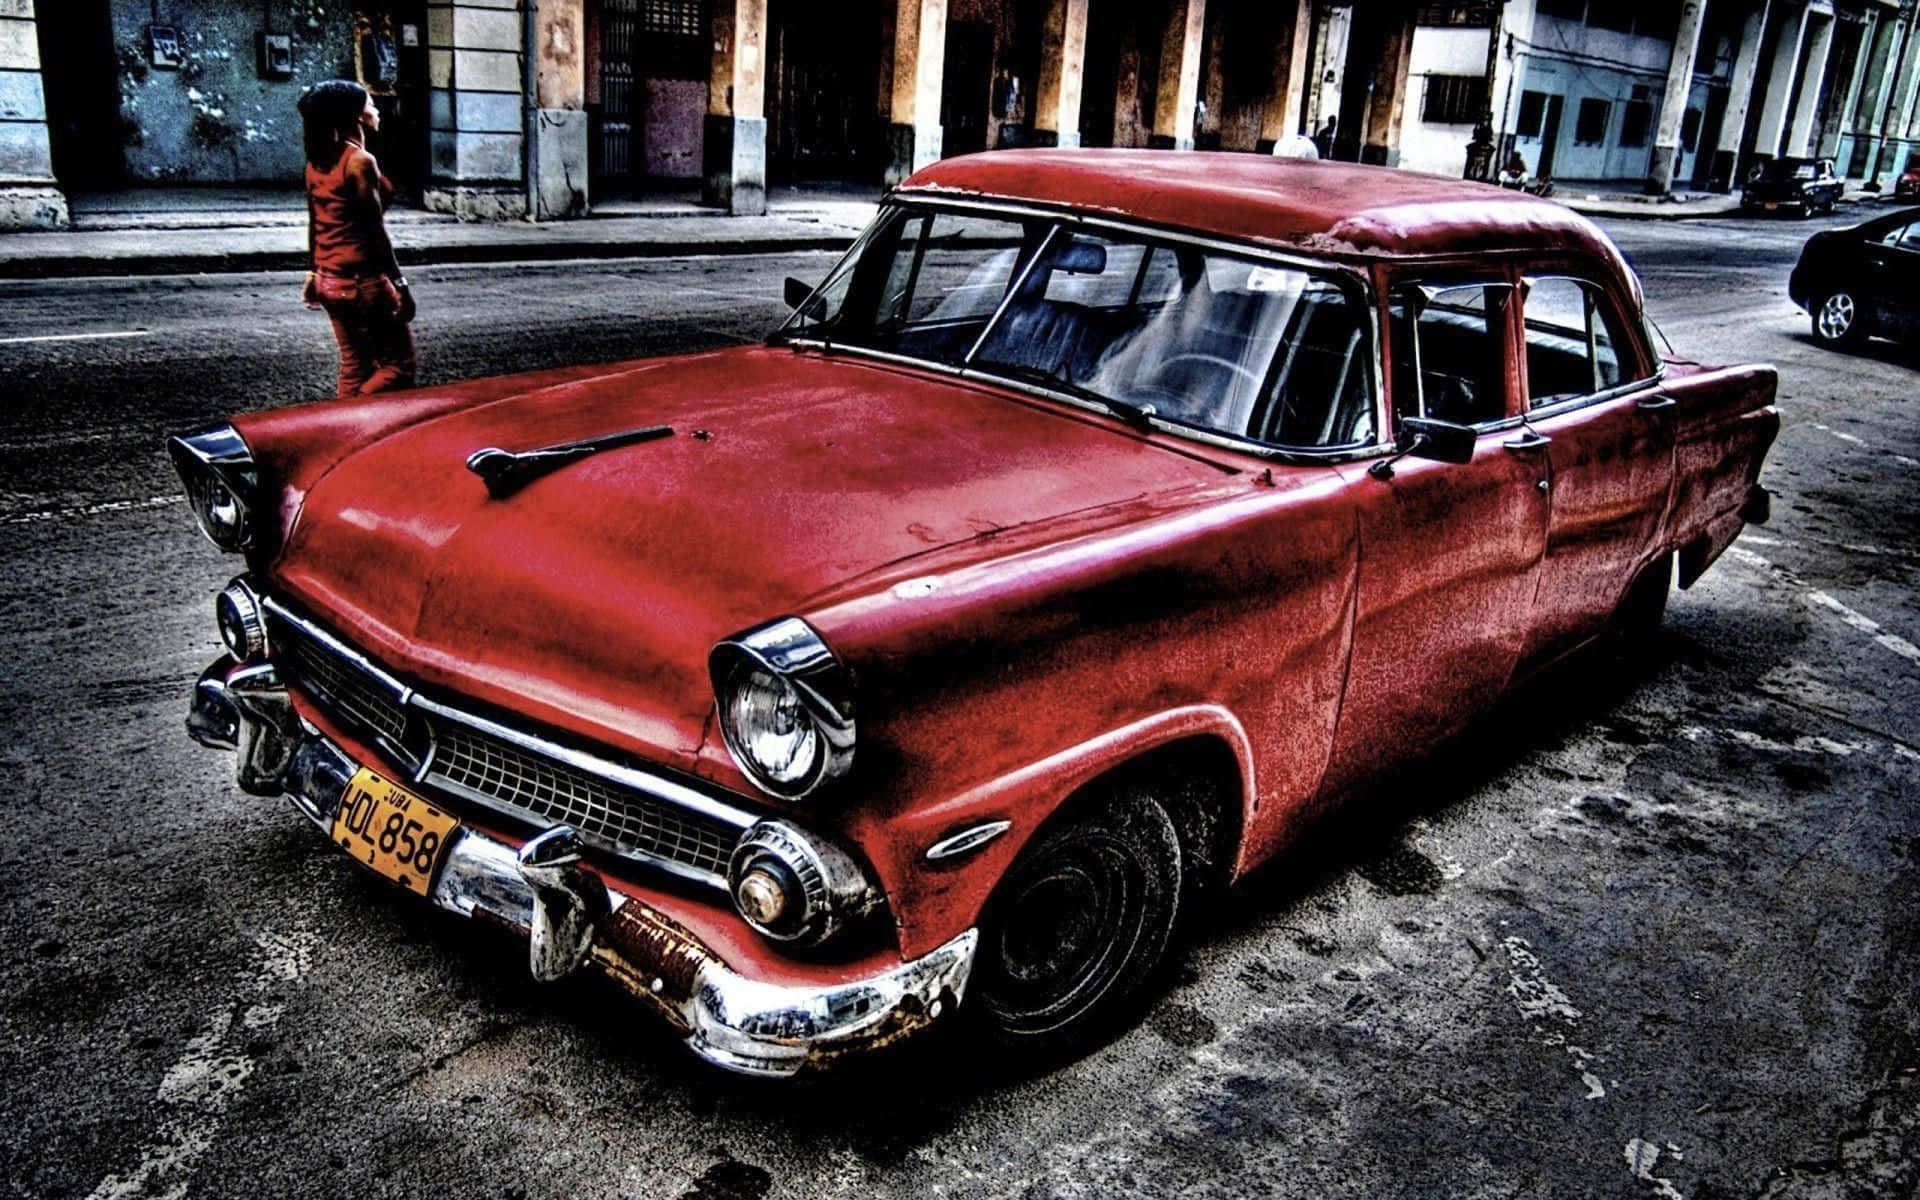 Enröd Bil Står Parkerad På Gatan I Kuba. Wallpaper